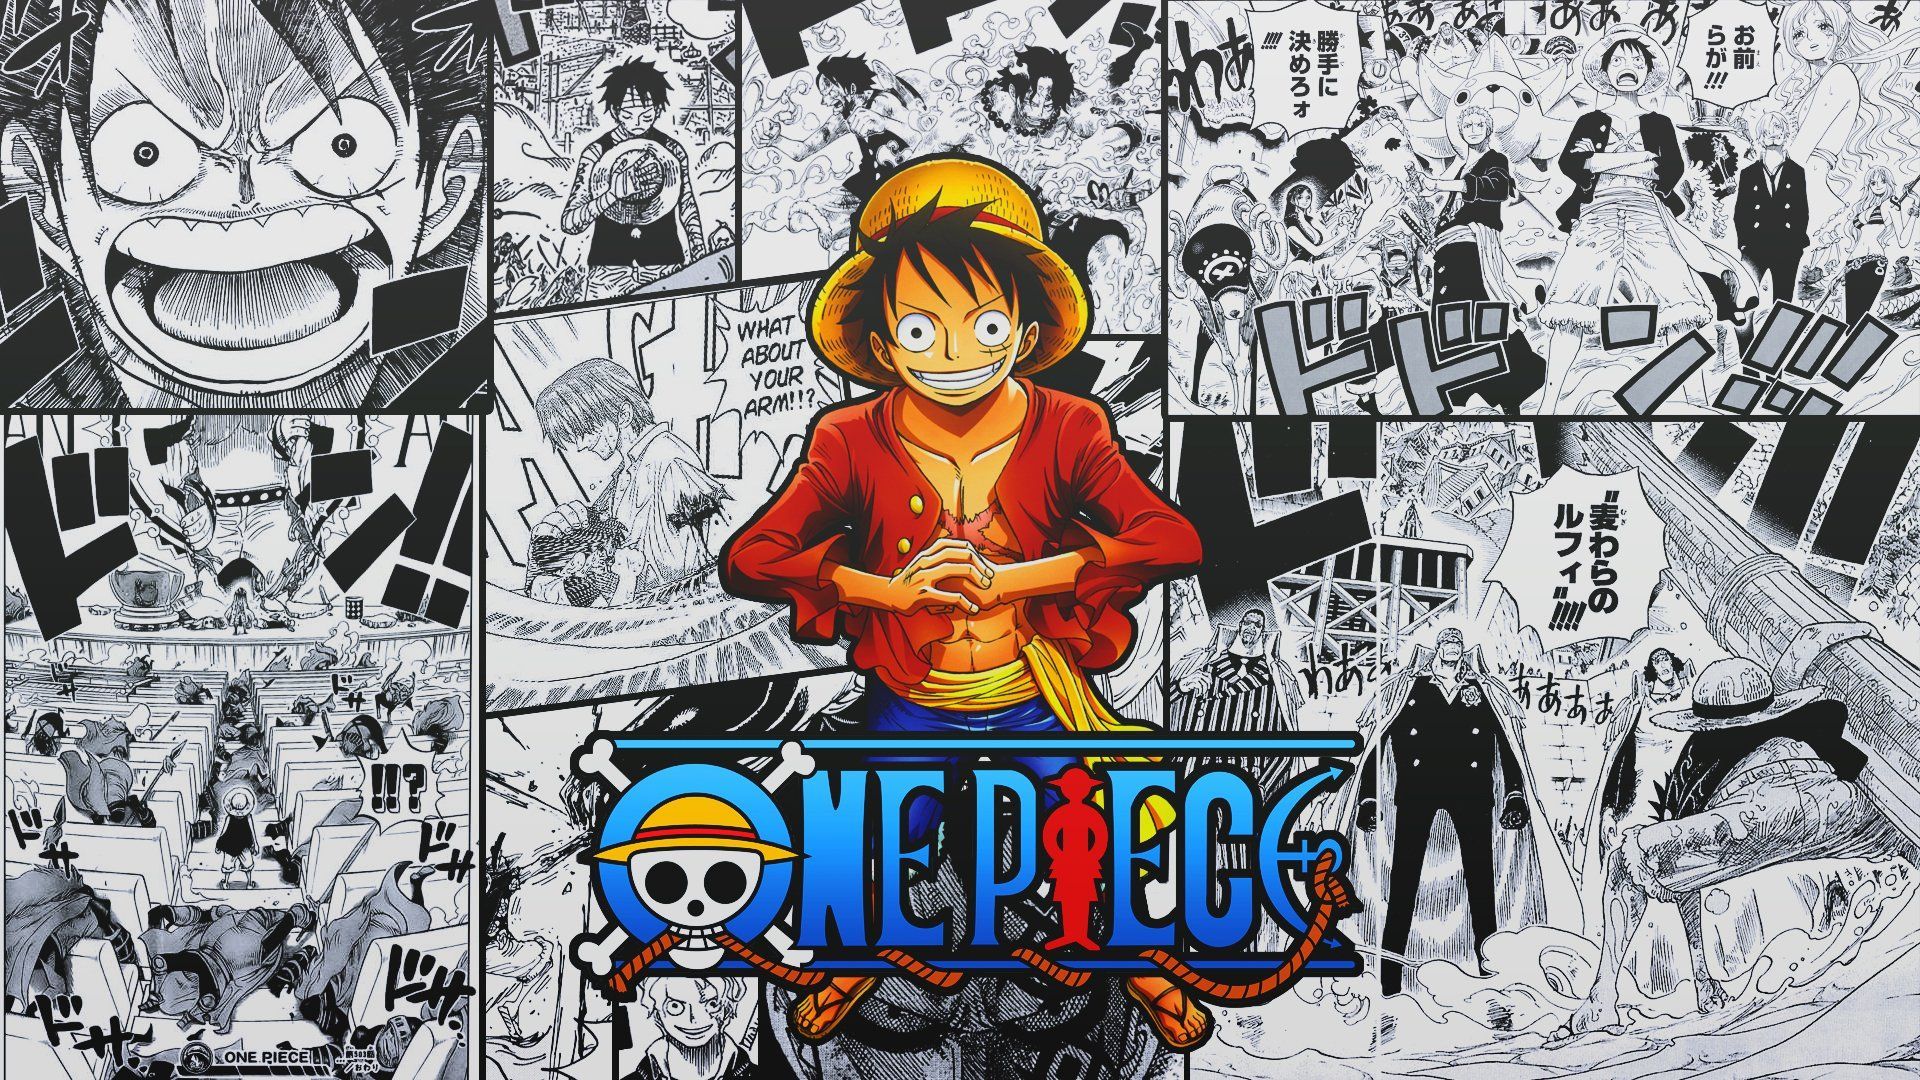 Fond D'écran Pc Manga One Piece - One Piece News Photos Videos - Et de